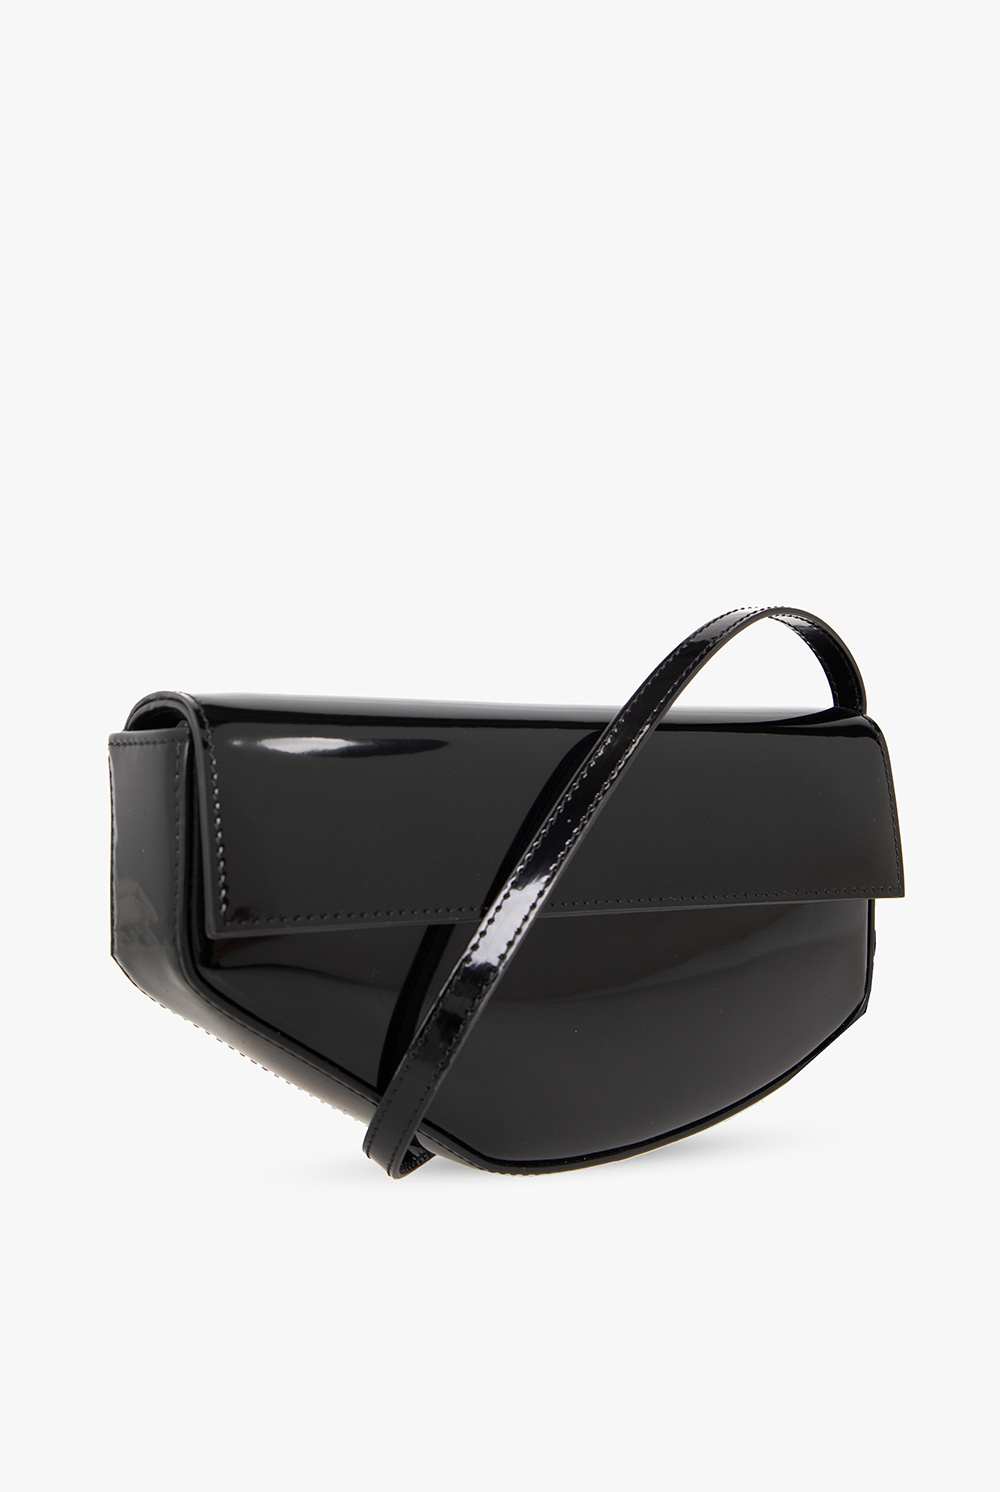 Dolce & Gabbana Patent-leather shoulder bag